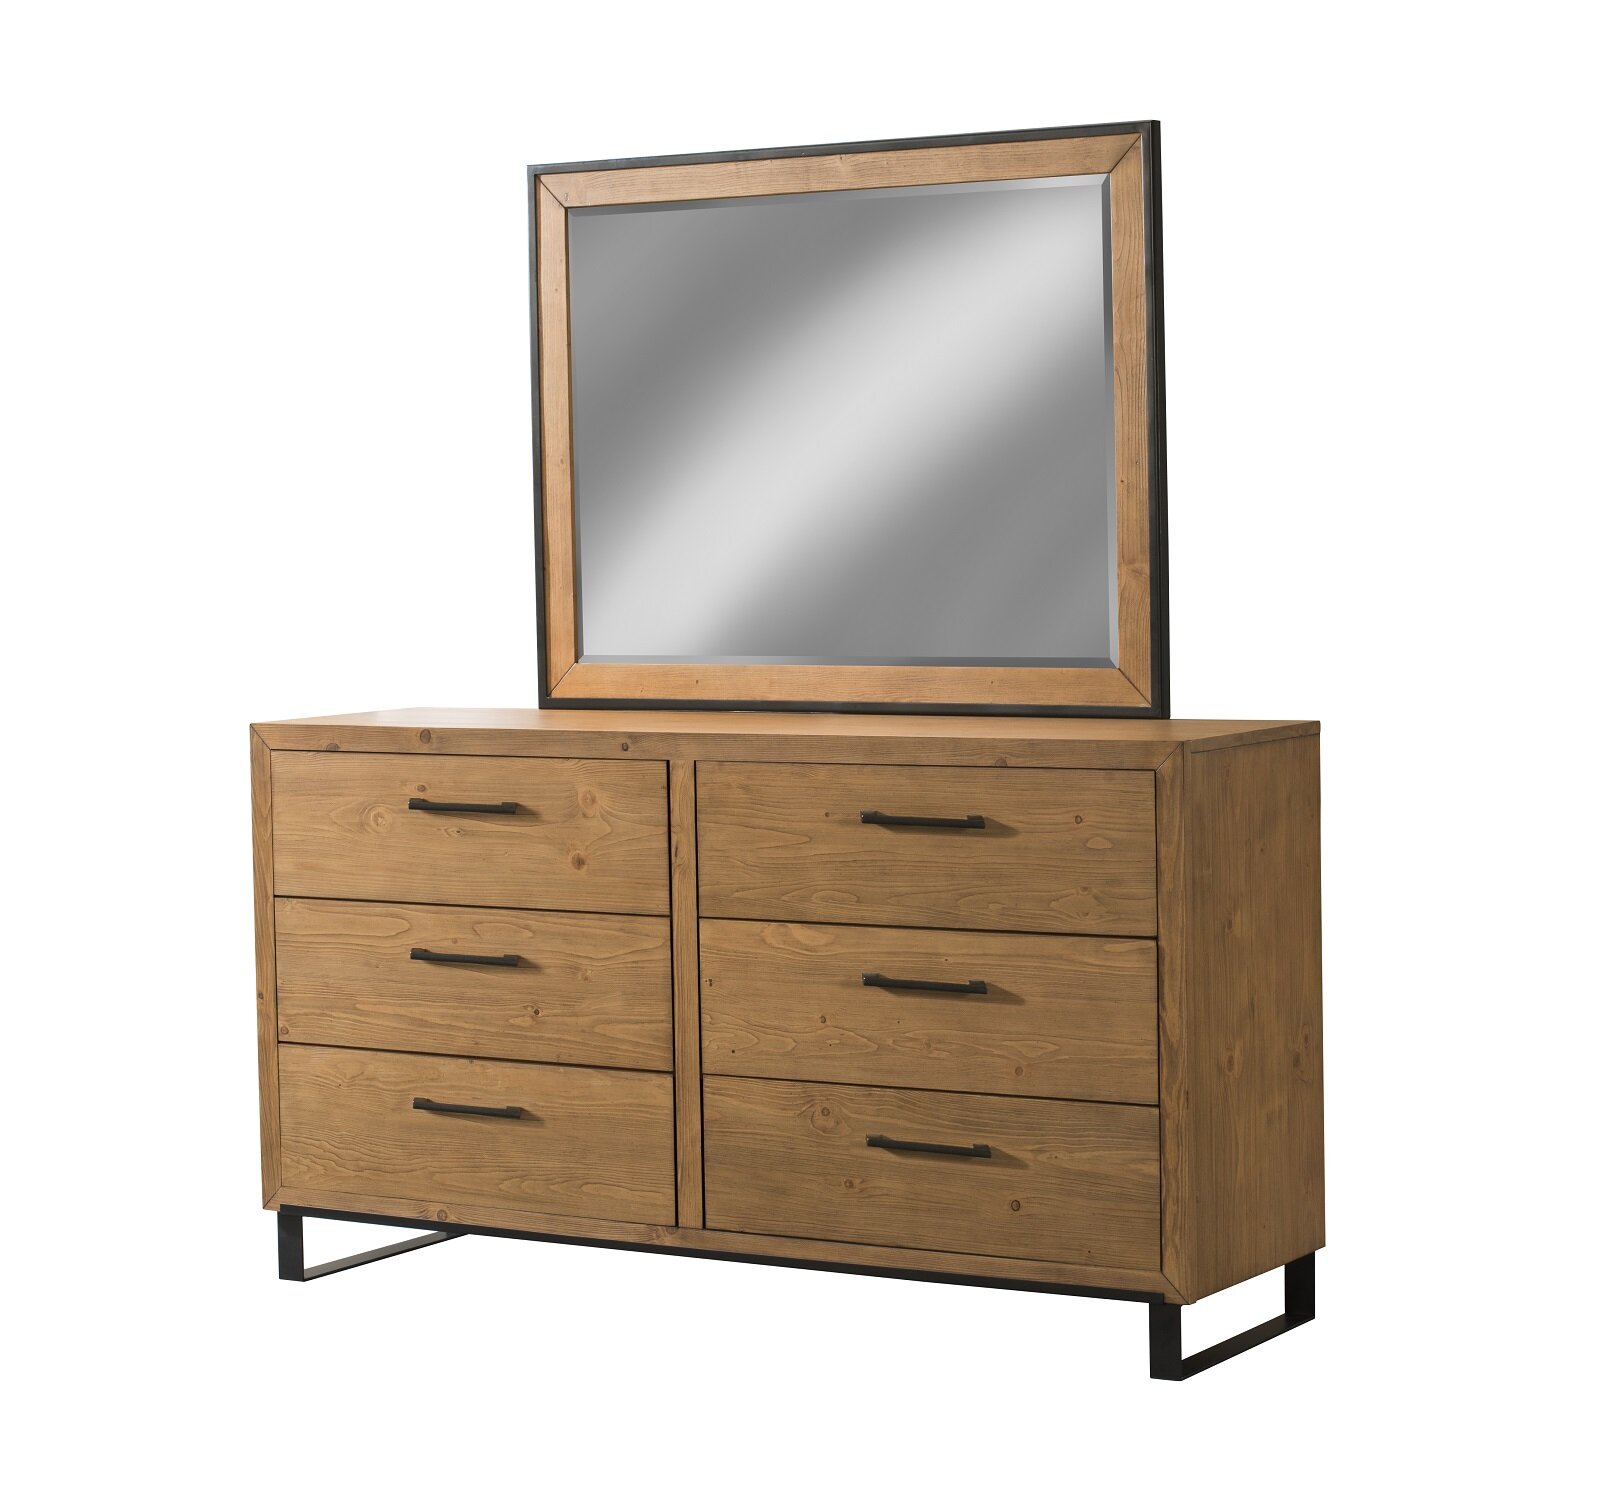 17 Stories Crestline Rectangular Dresser Mirror Wayfair